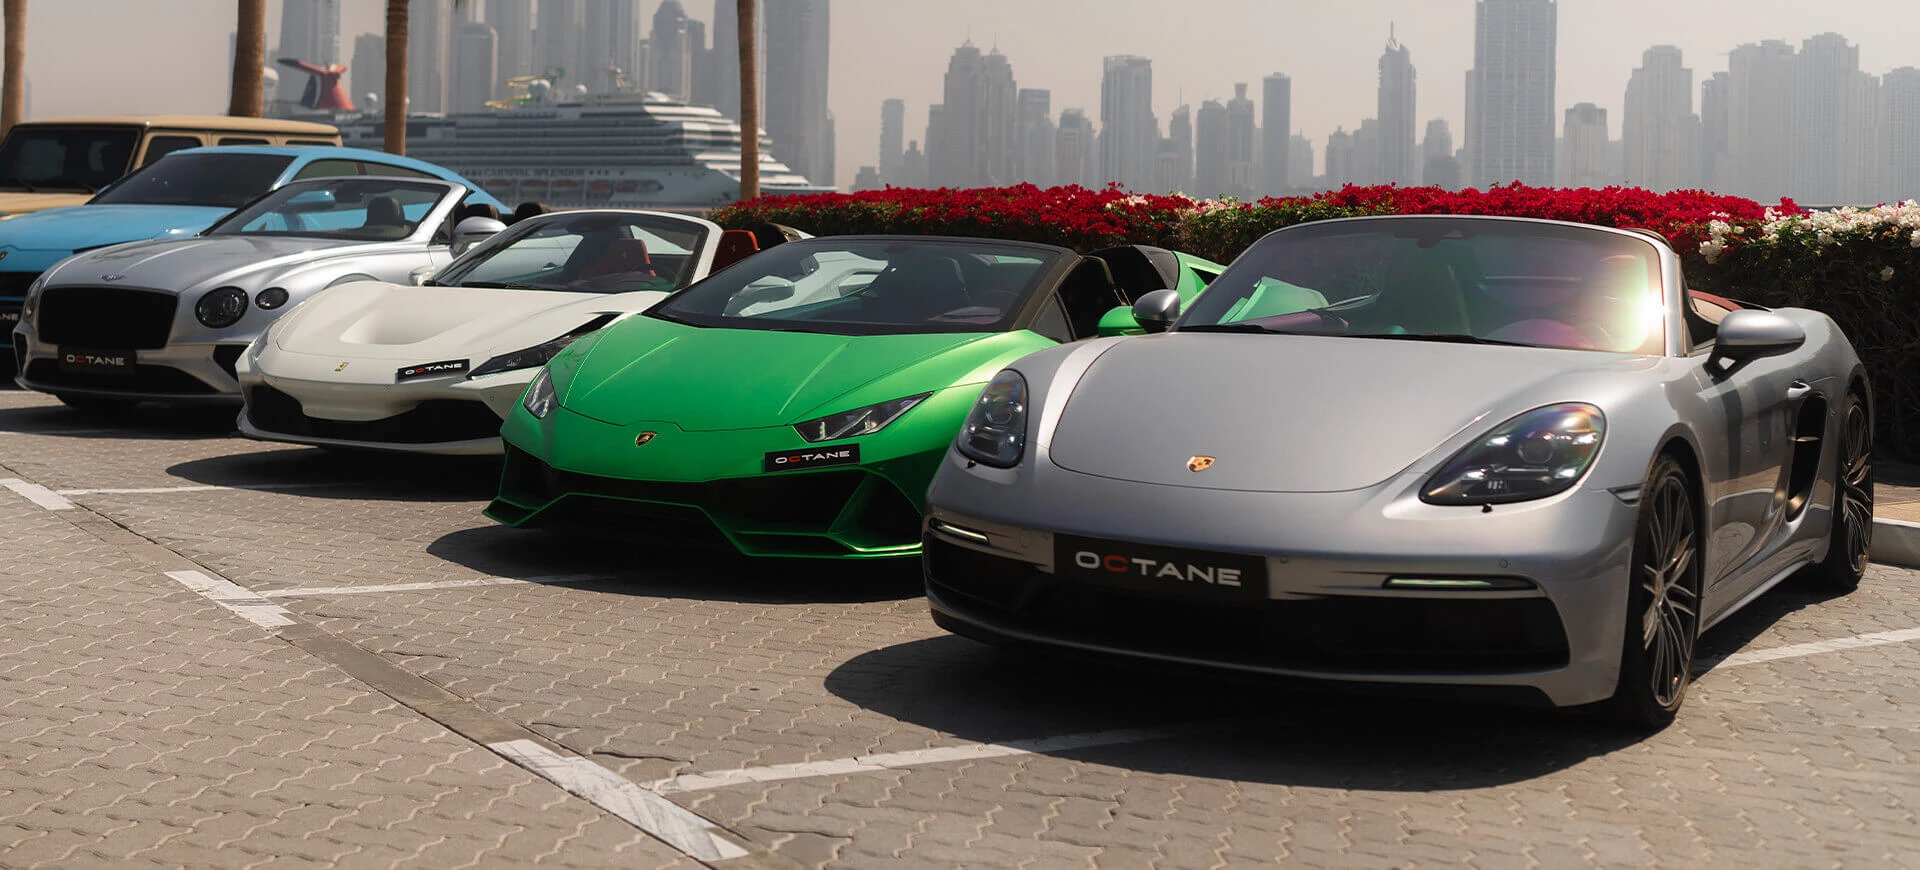 تأجير السيارات المكشوفة في دبي